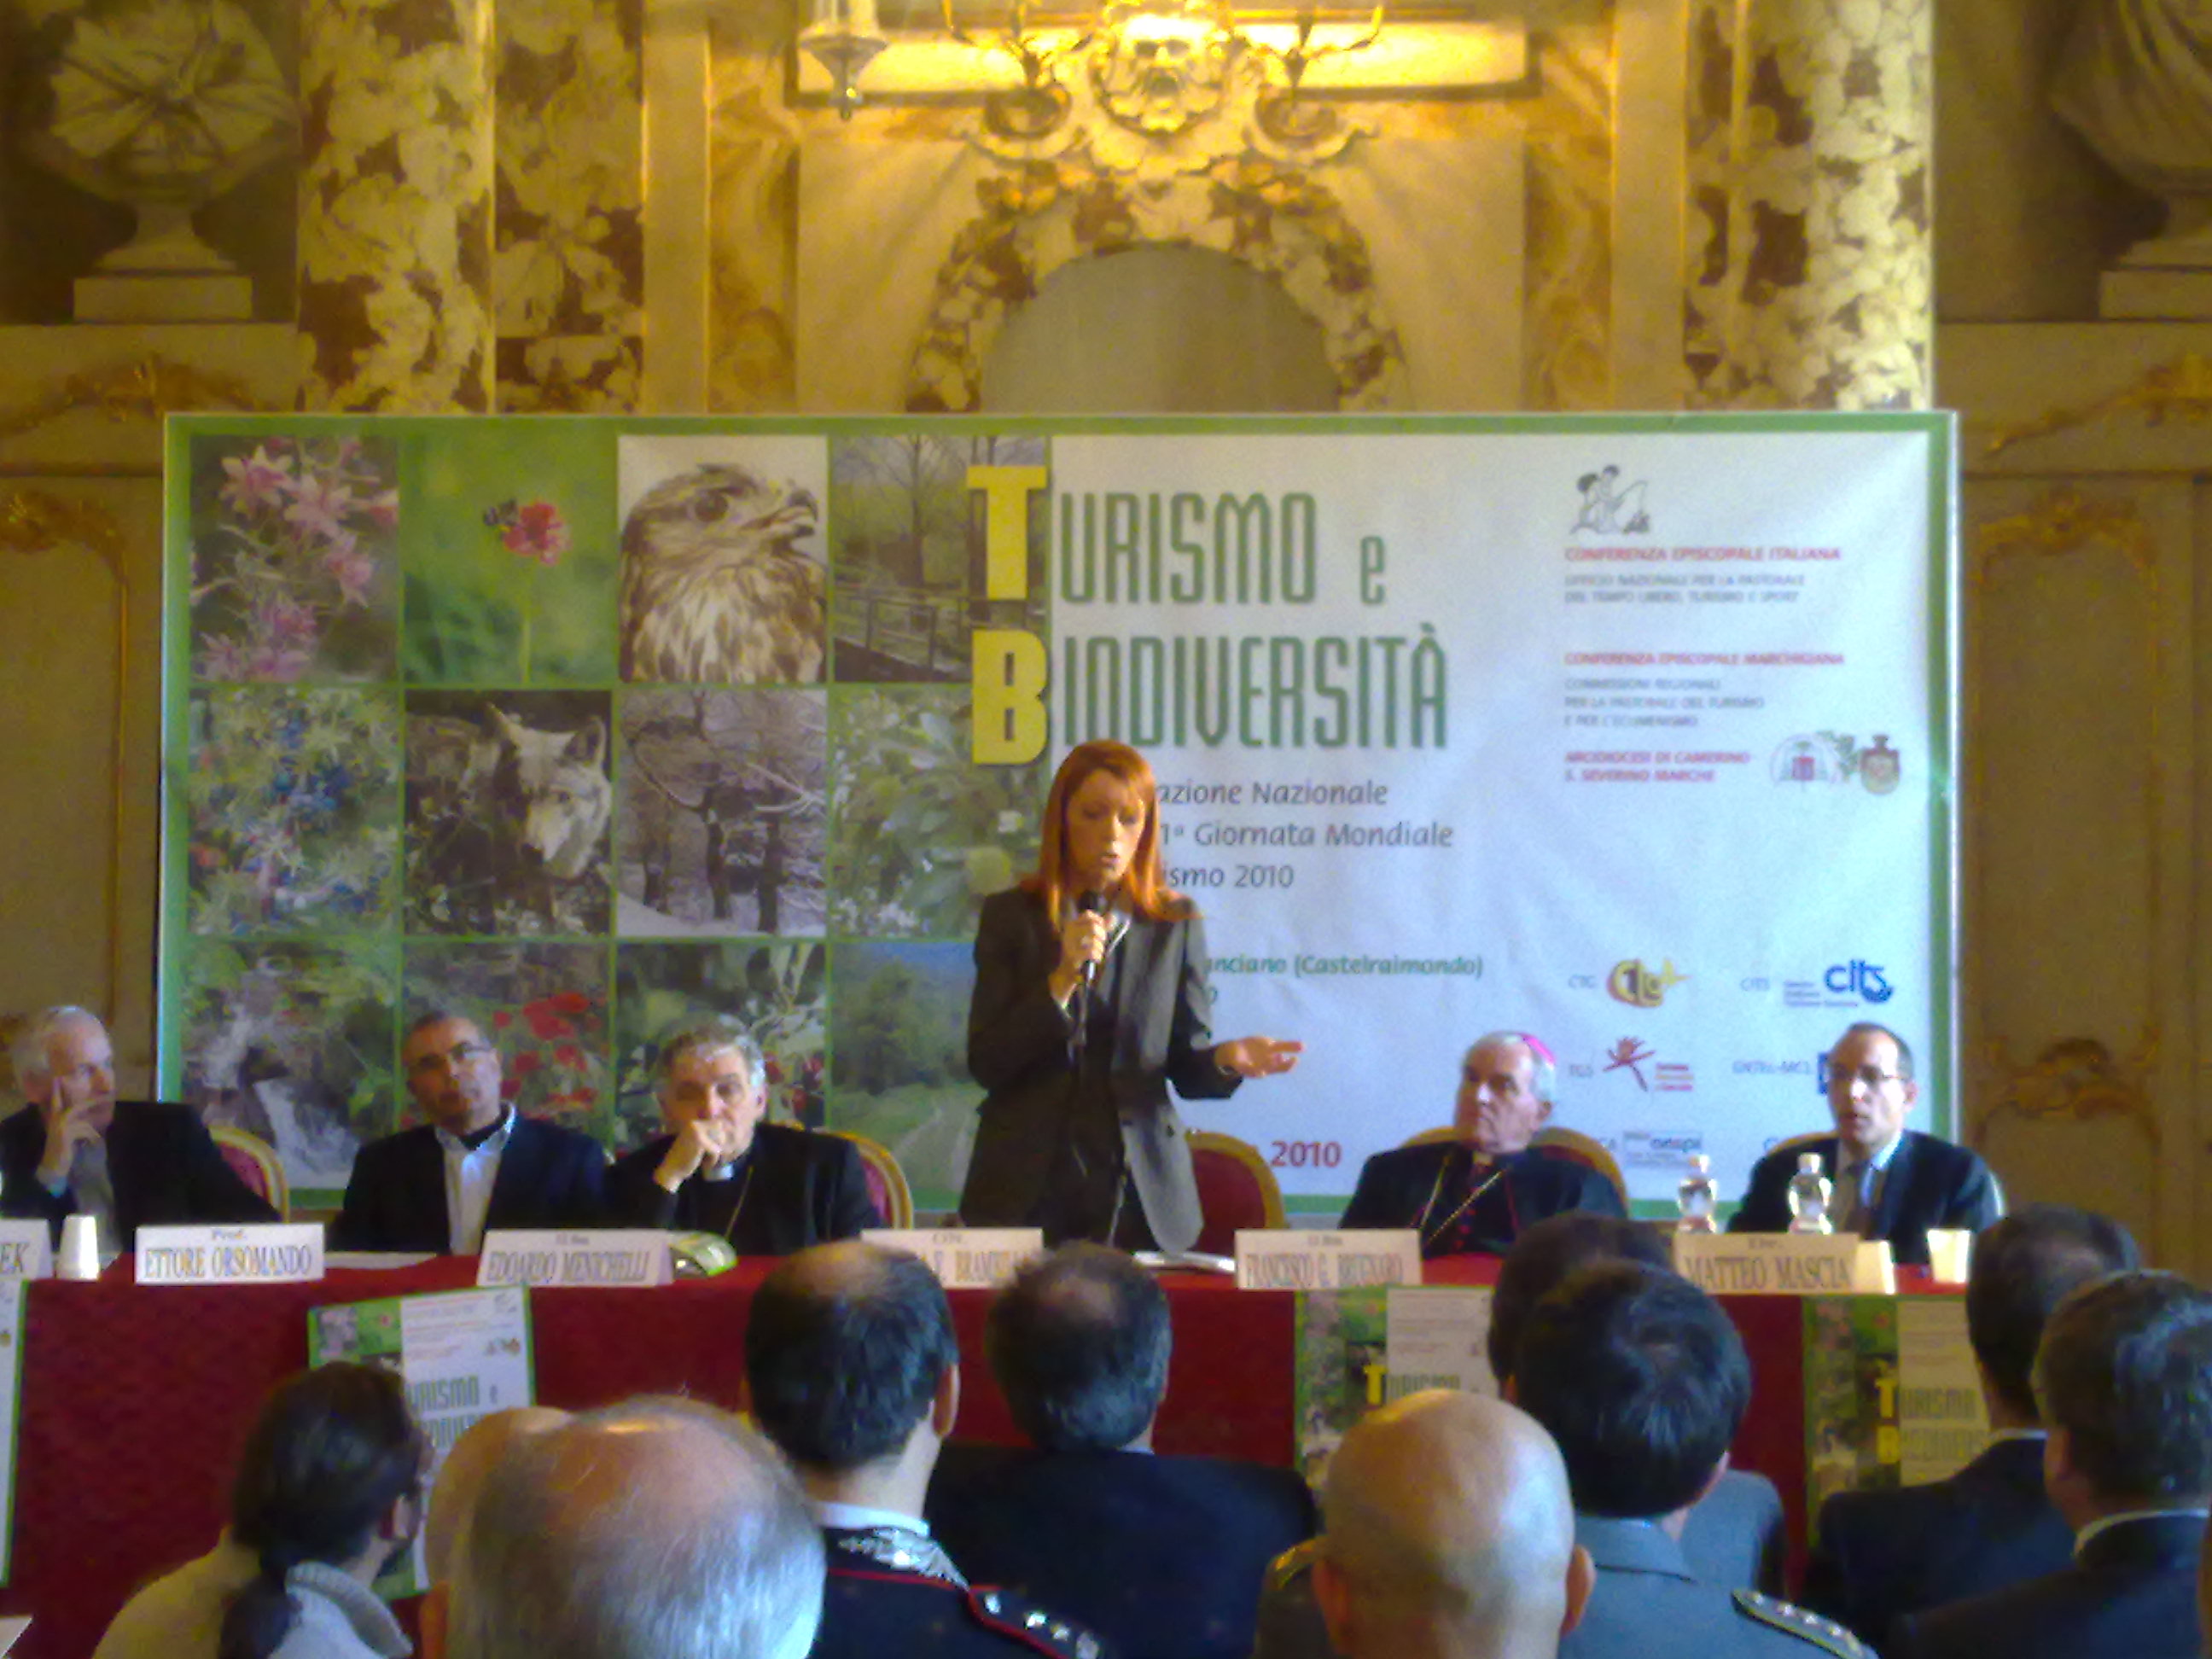 6 Novembre 2010 - Giornata Mondiale del Turismo al Castello di Lanciano